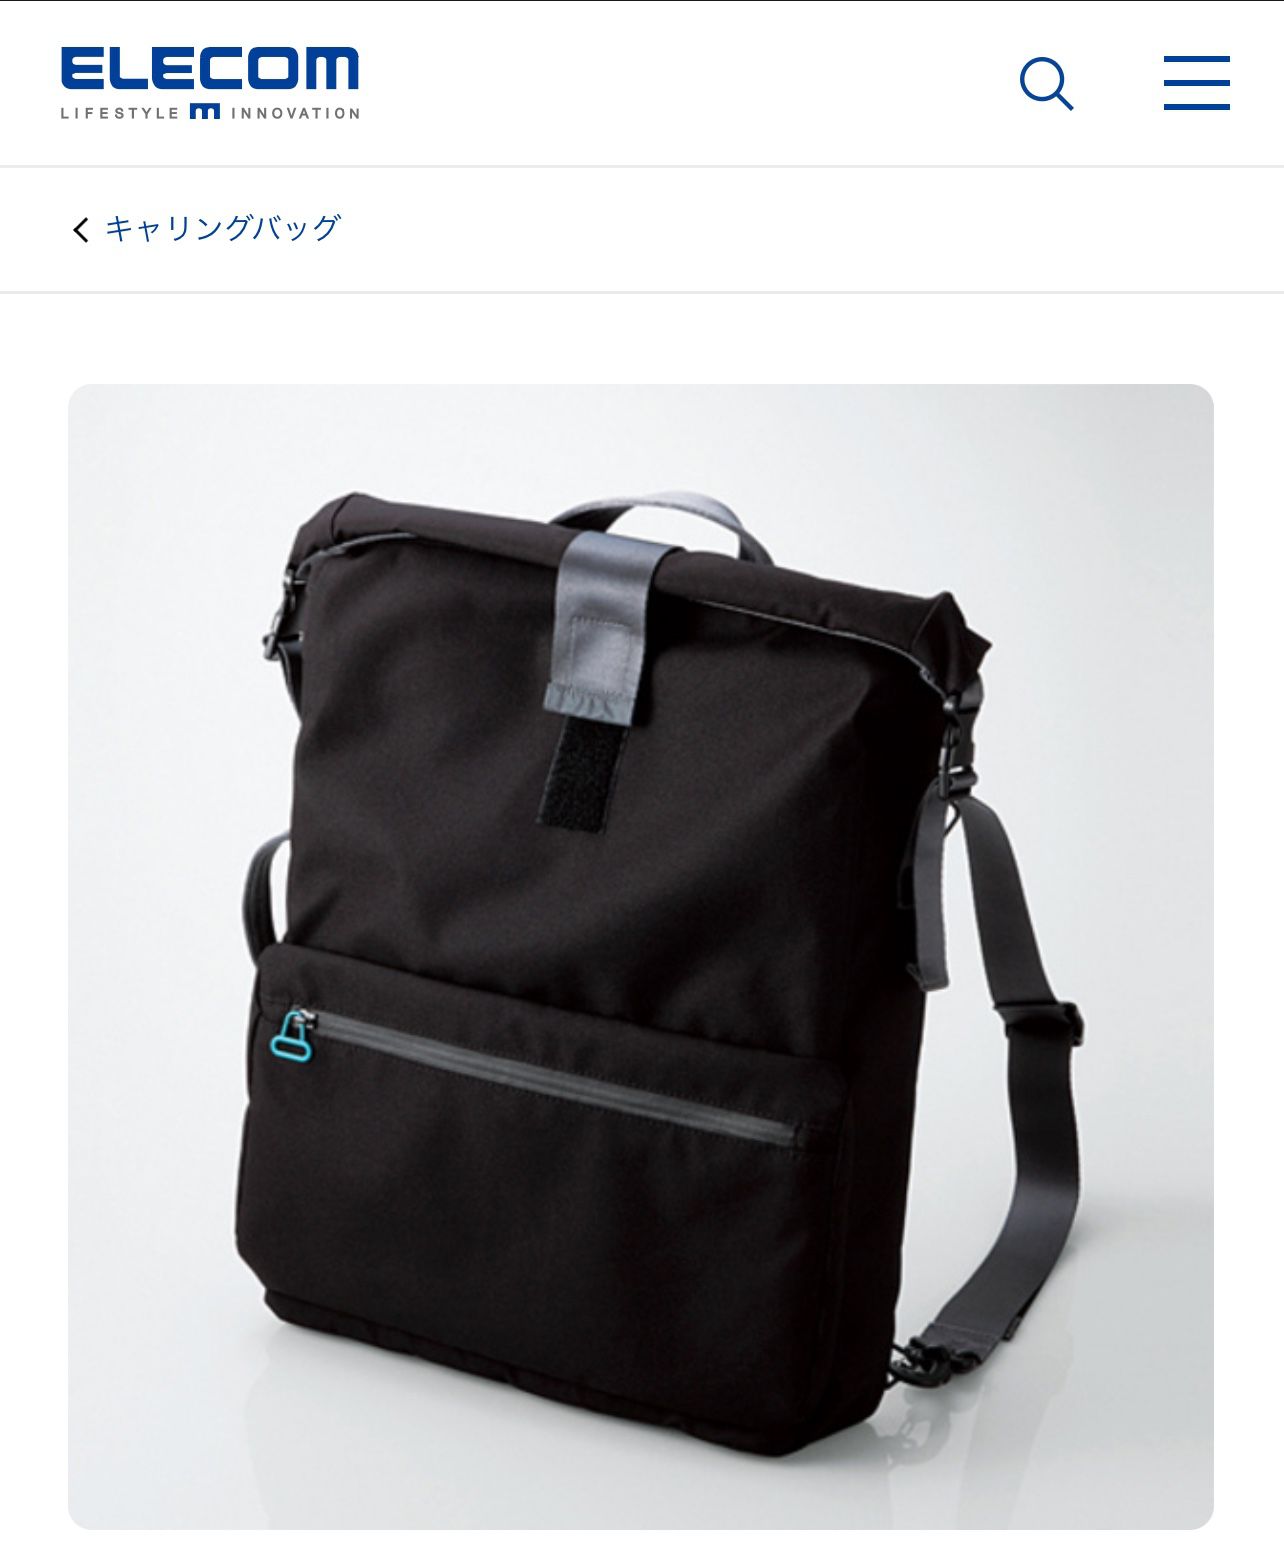 ELECOM Laptop Backpack Japan Design